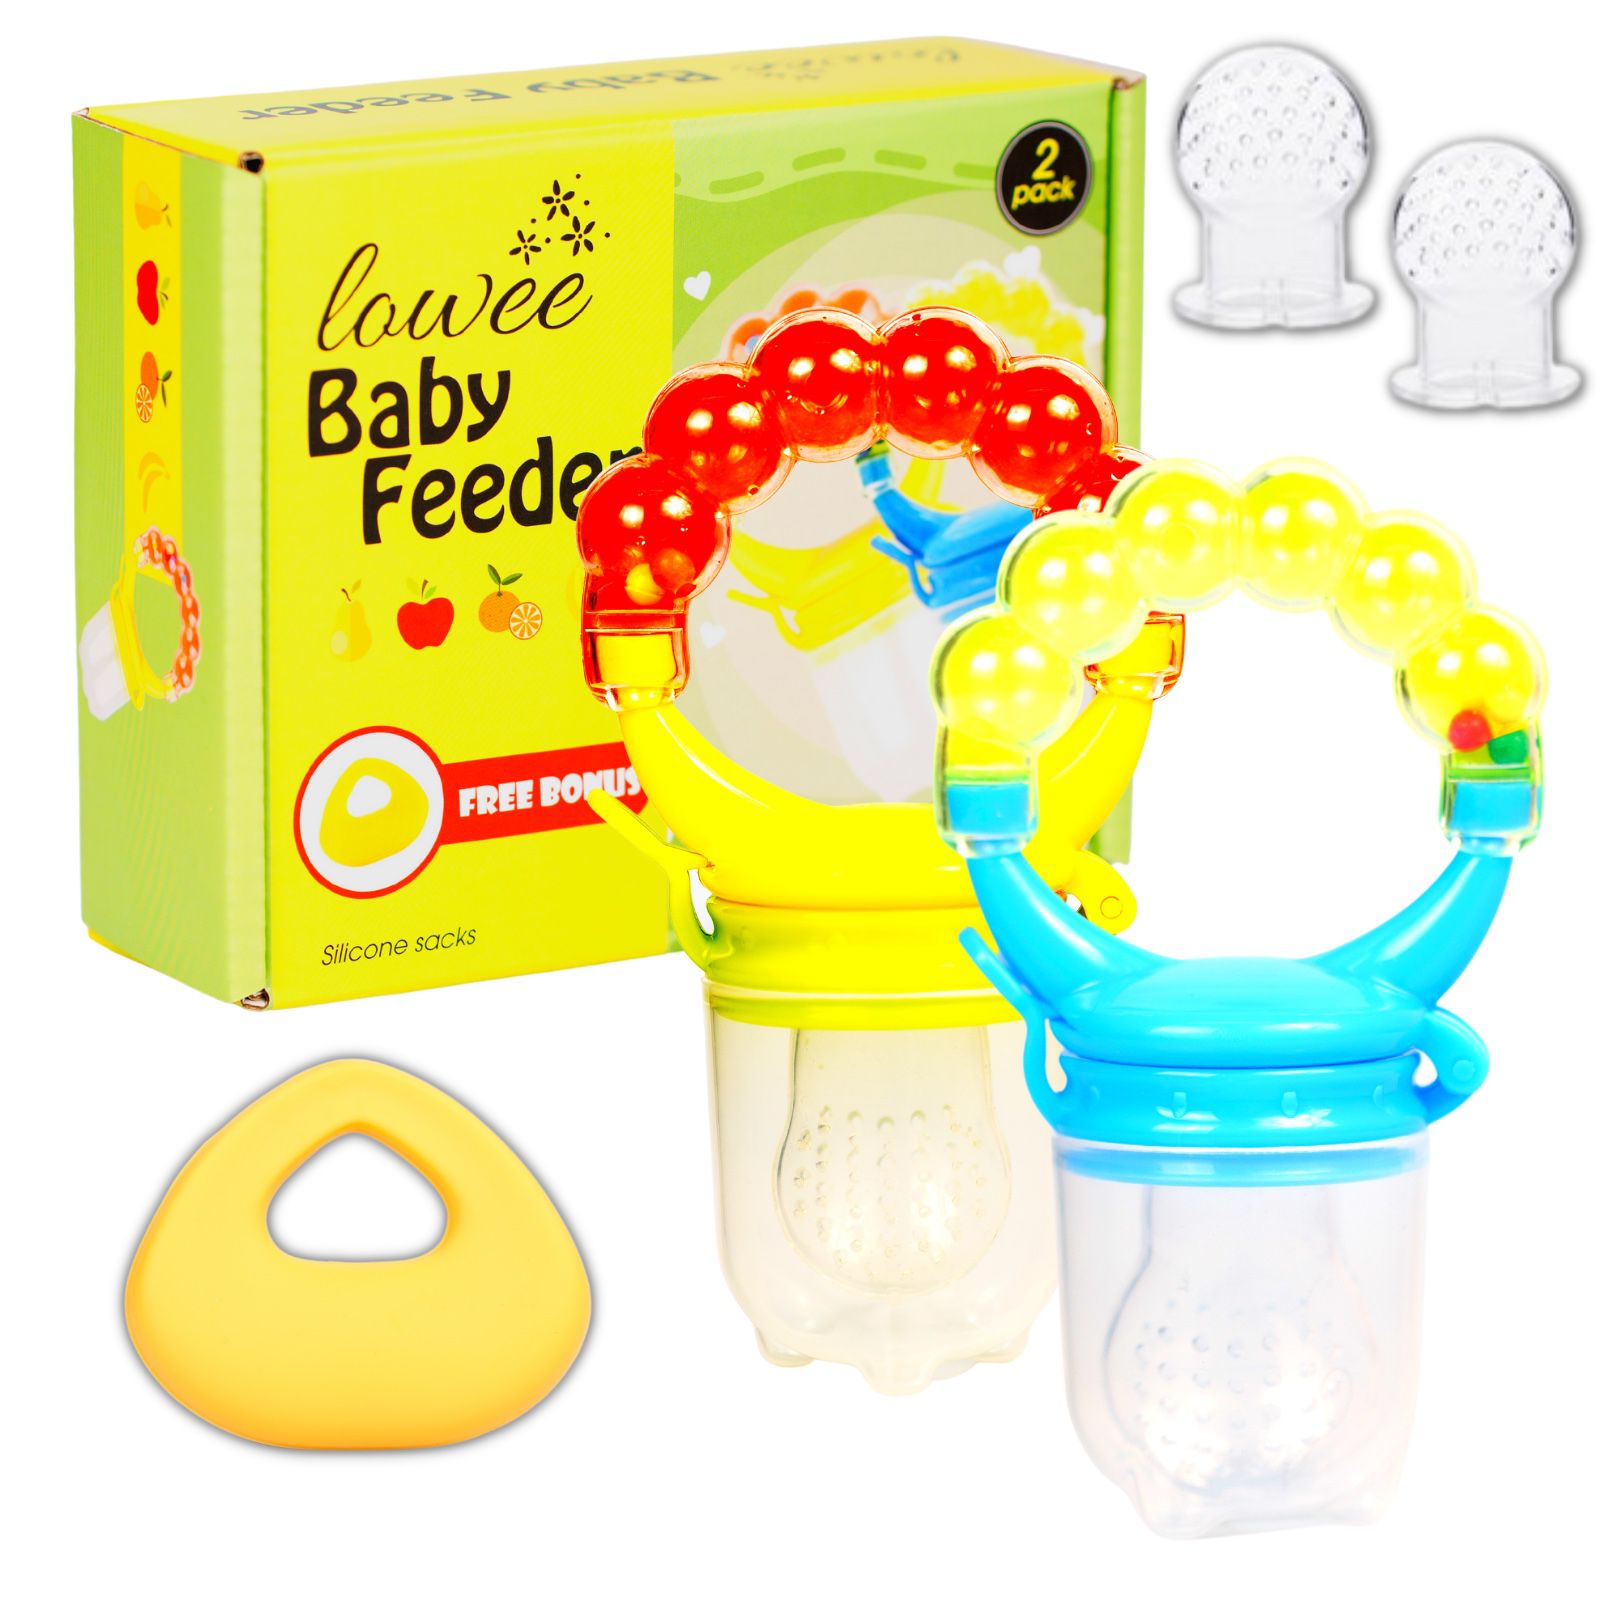 Baby Feeder / 2 Pack / Gift Package / FREE Bonus Teething Toy